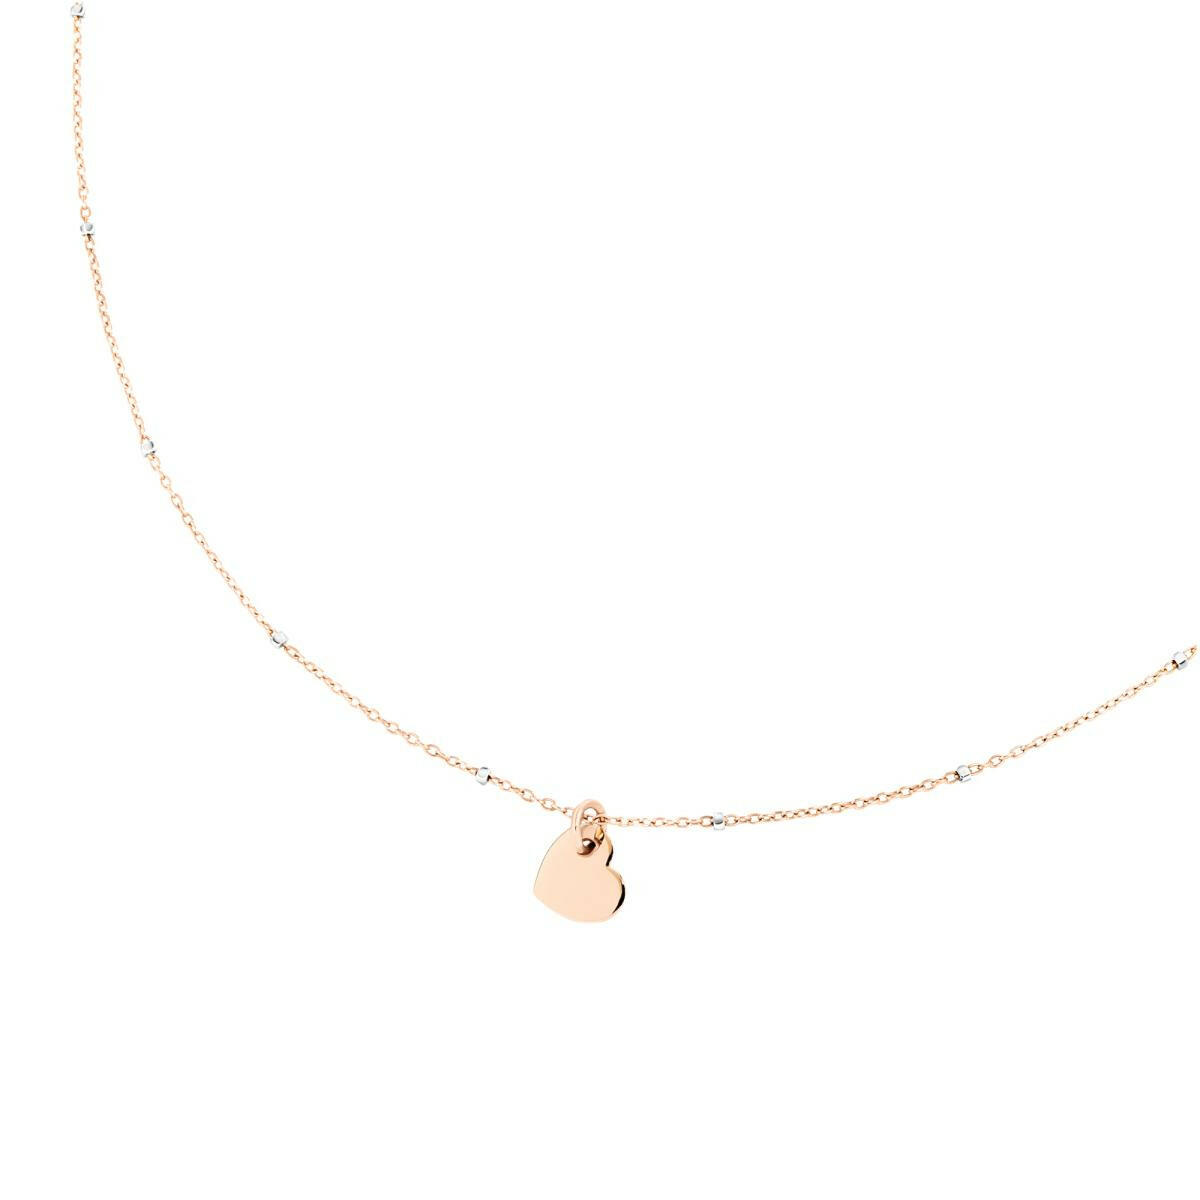 Halskette Mini-Herz von DoDo online kaufen (Ref. DCC4003-HEART-0009R)